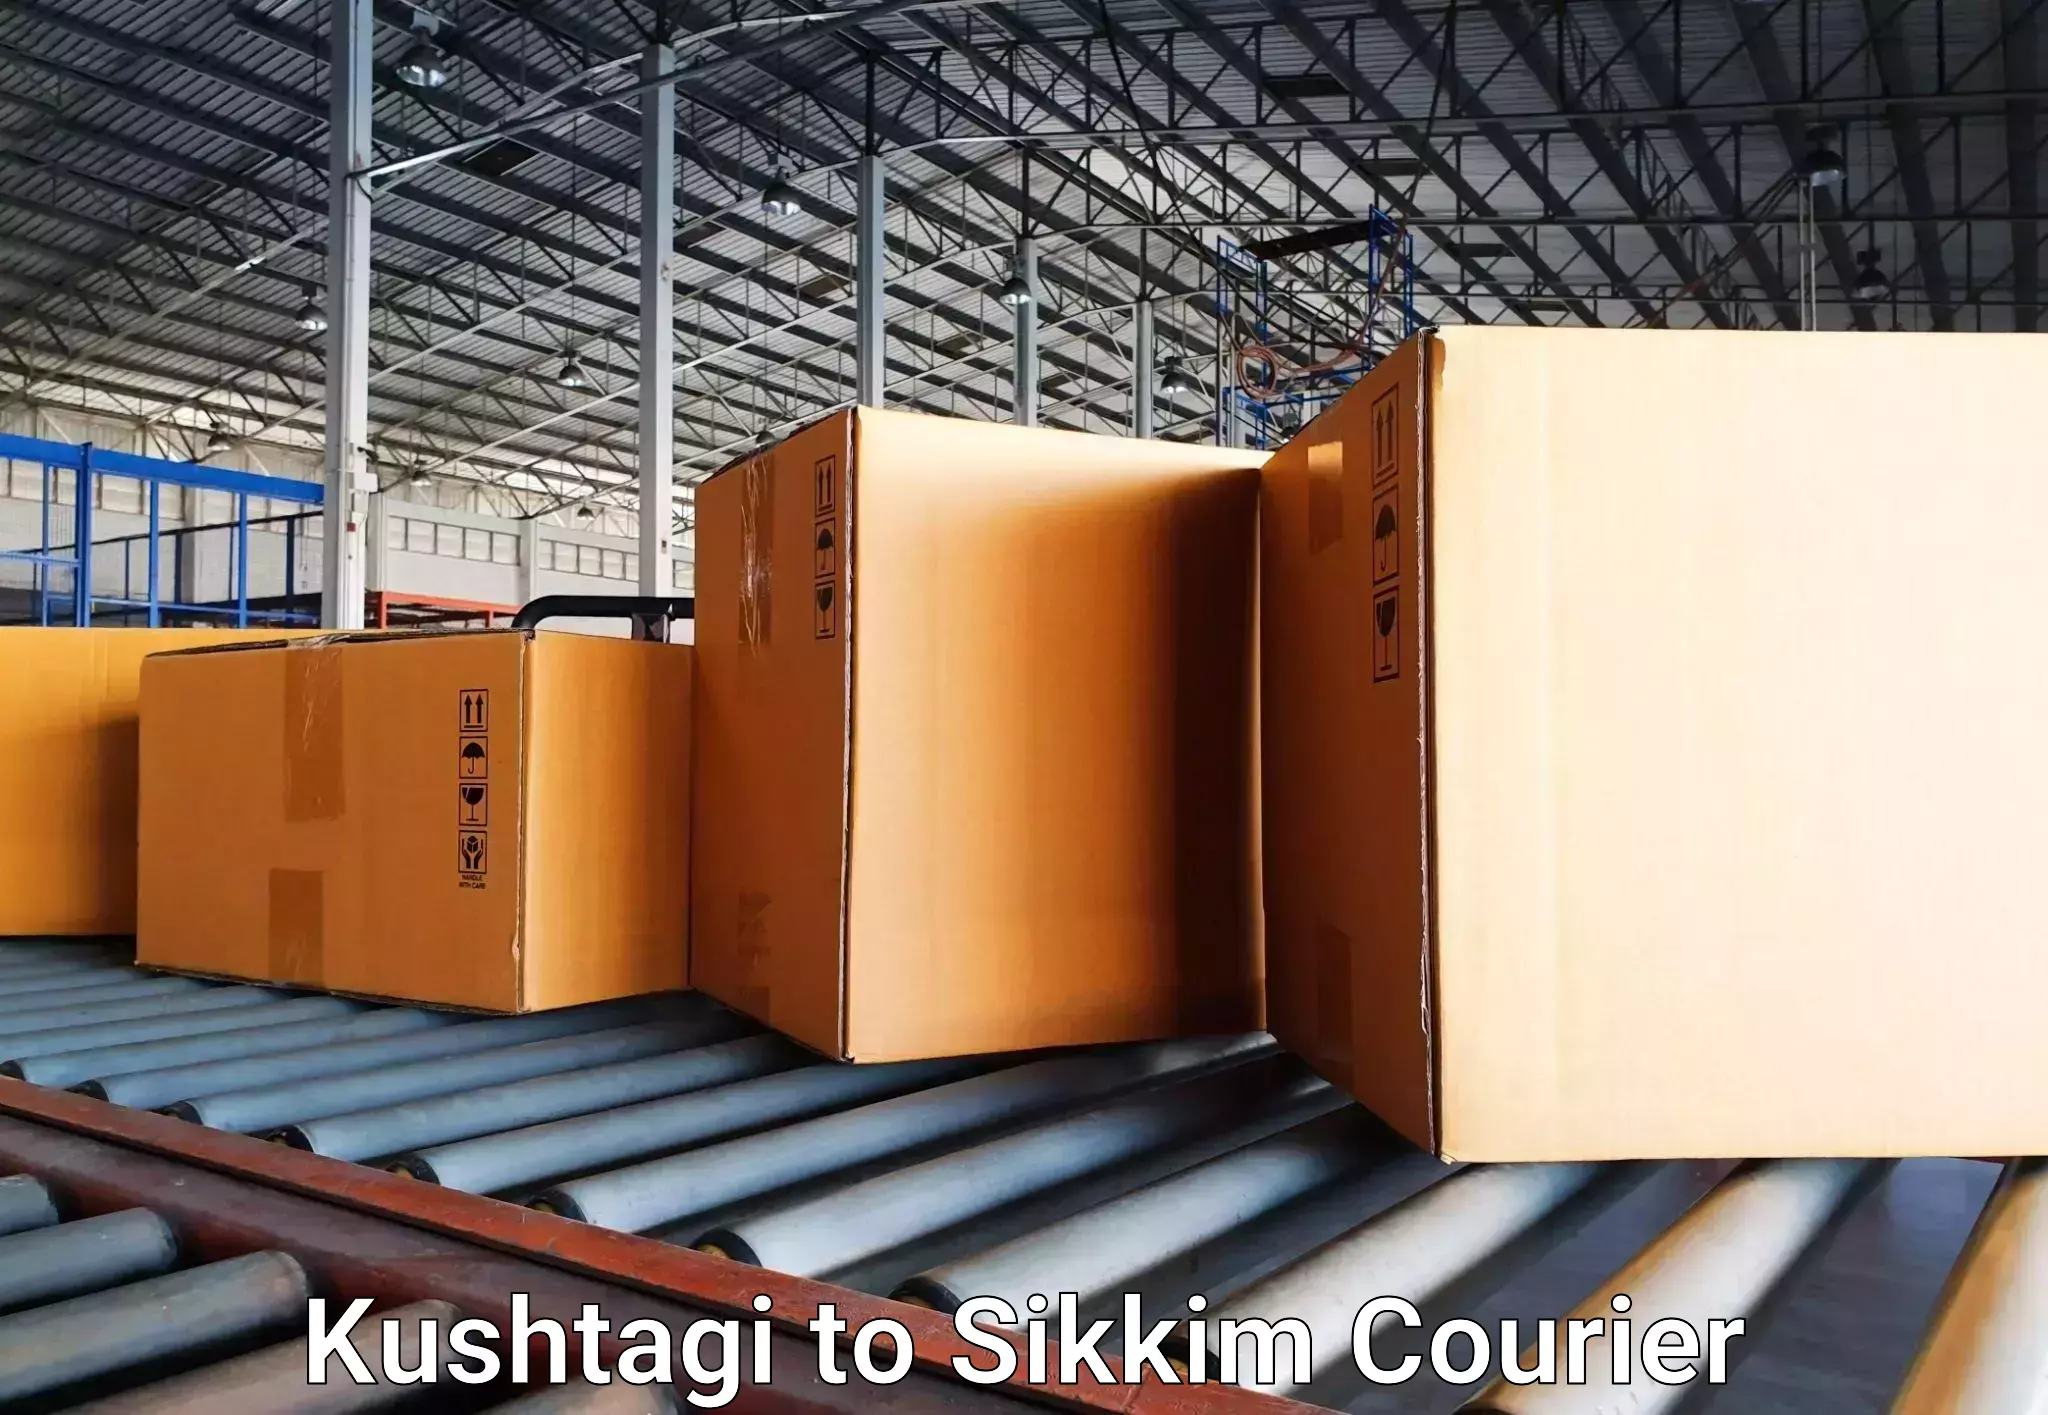 Luggage shipment specialists Kushtagi to Pelling